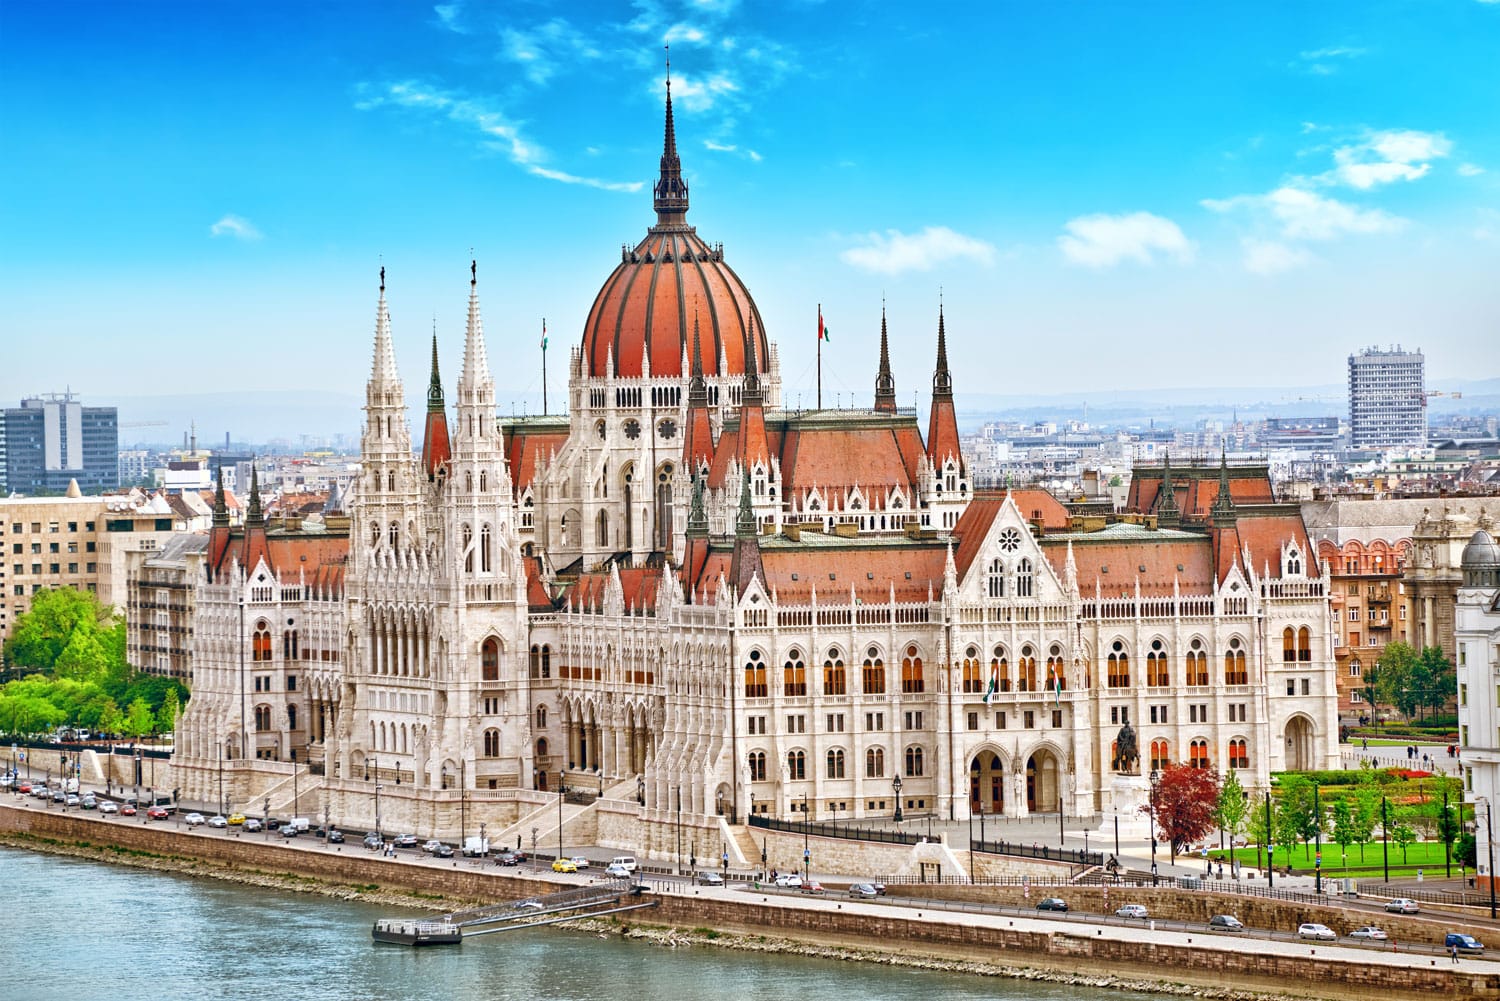 Ουγγρικό κοινοβούλιο την ημέρα. Βουδαπέστη. Ένα από τα πιο όμορφα κτίρια της ουγγρικής πρωτεύουσας.